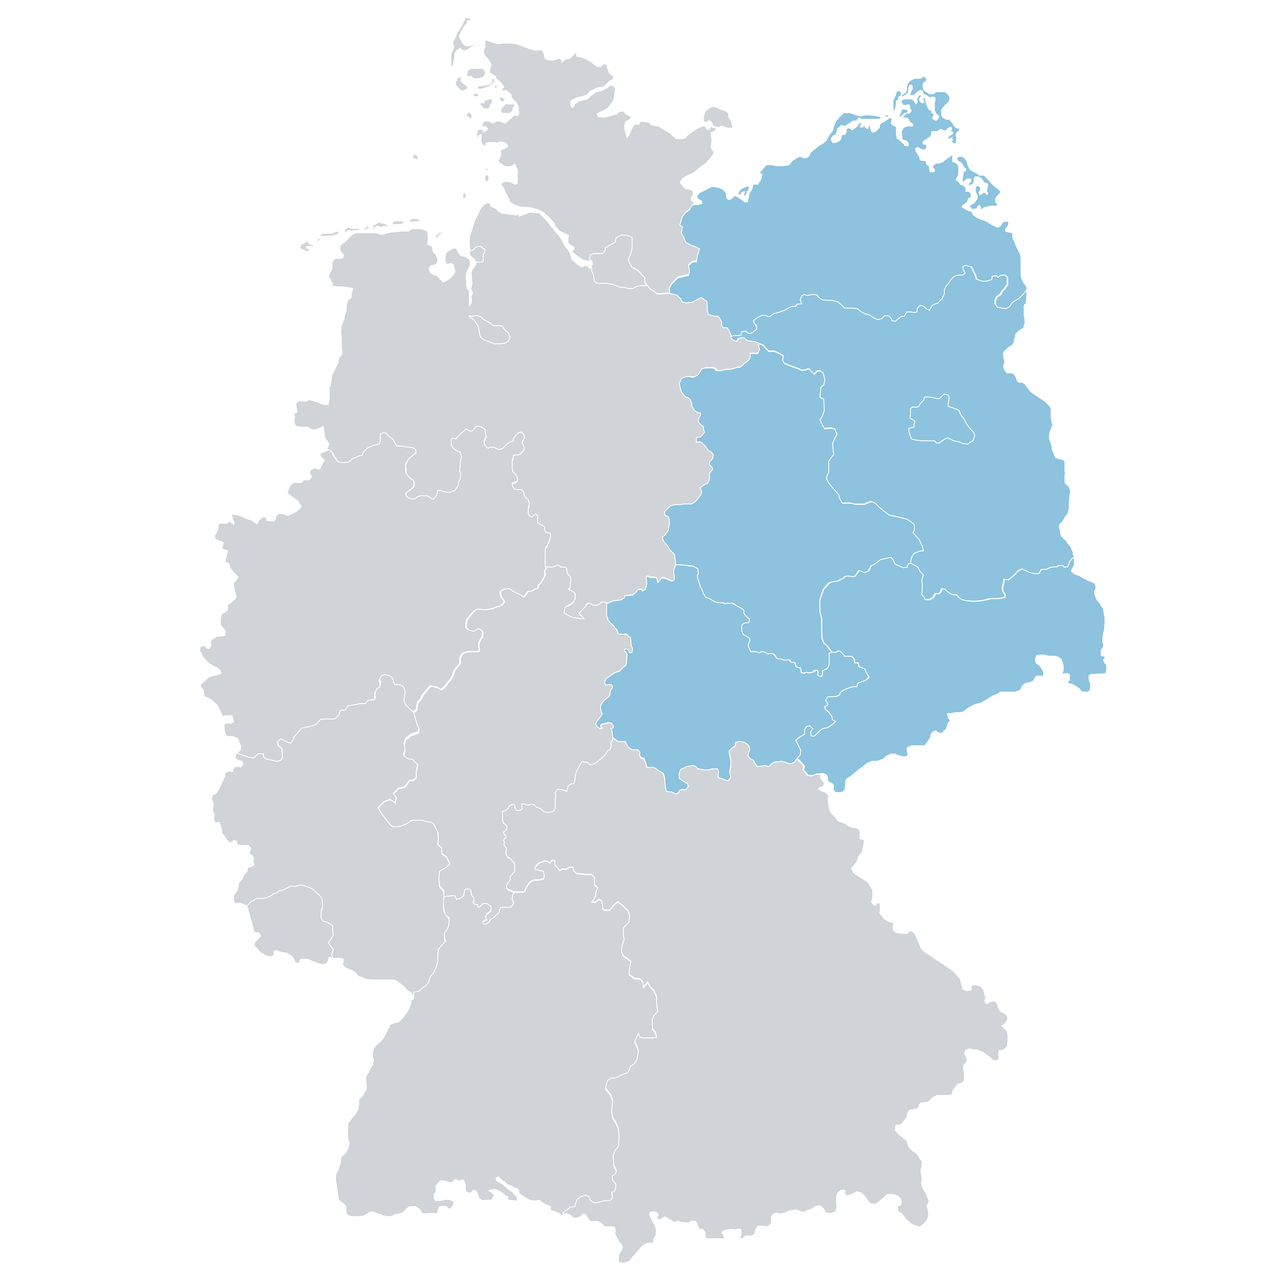 Grafik von der Deutschlandmarte mit der Markierung der Vertriebsregion Ost